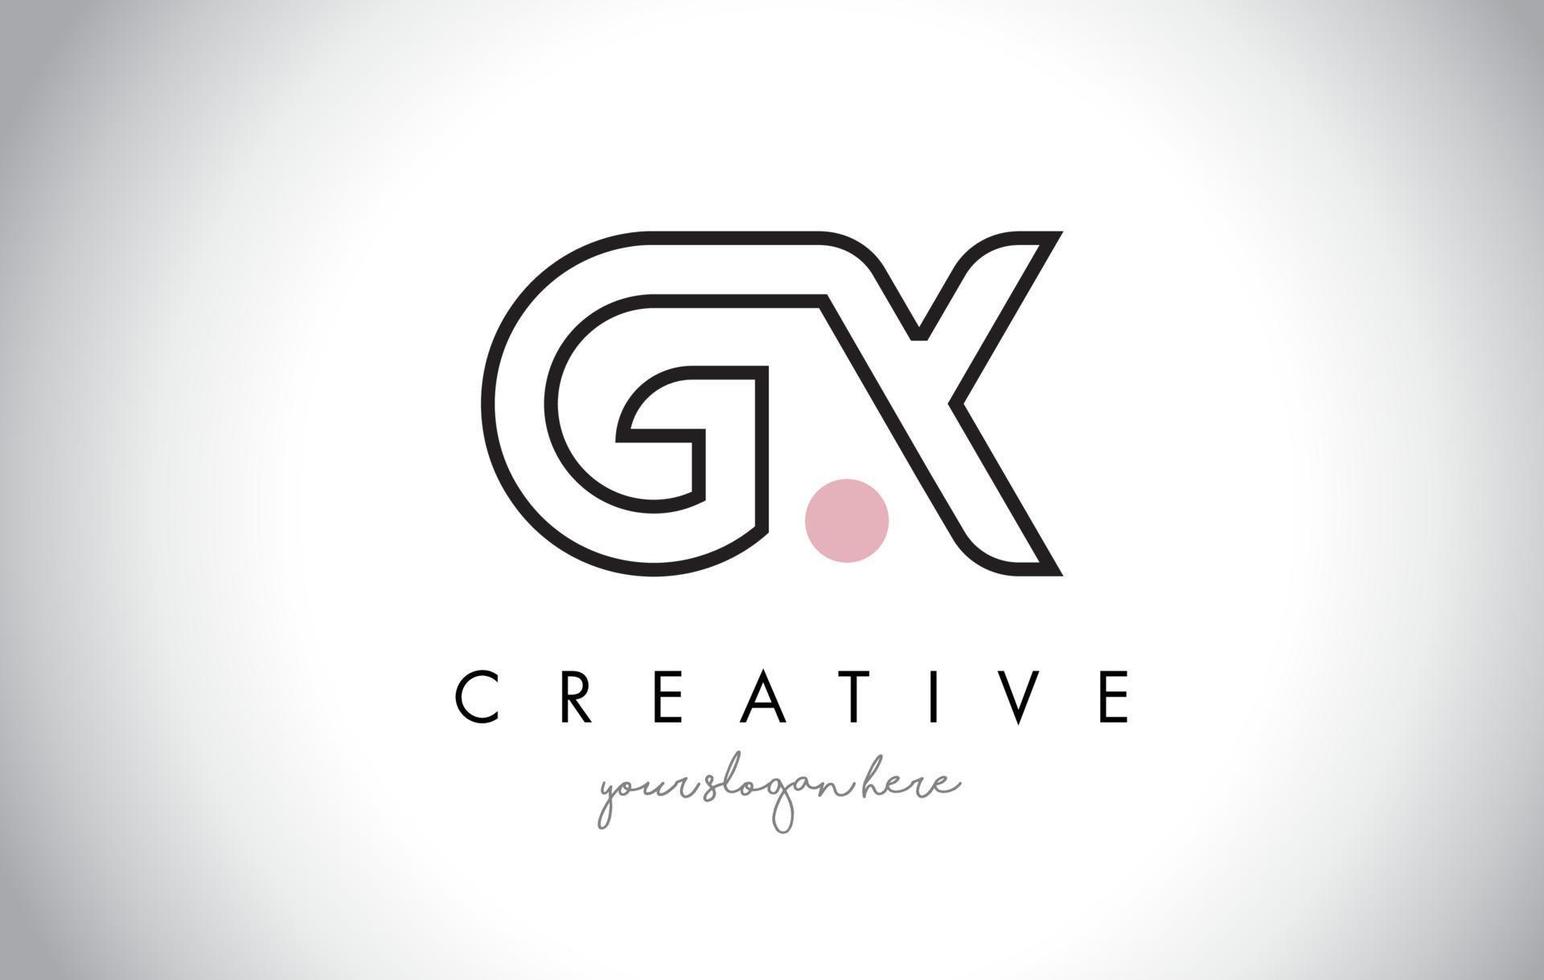 Diseño de logotipo de letra gx con tipografía creativa moderna de moda. vector